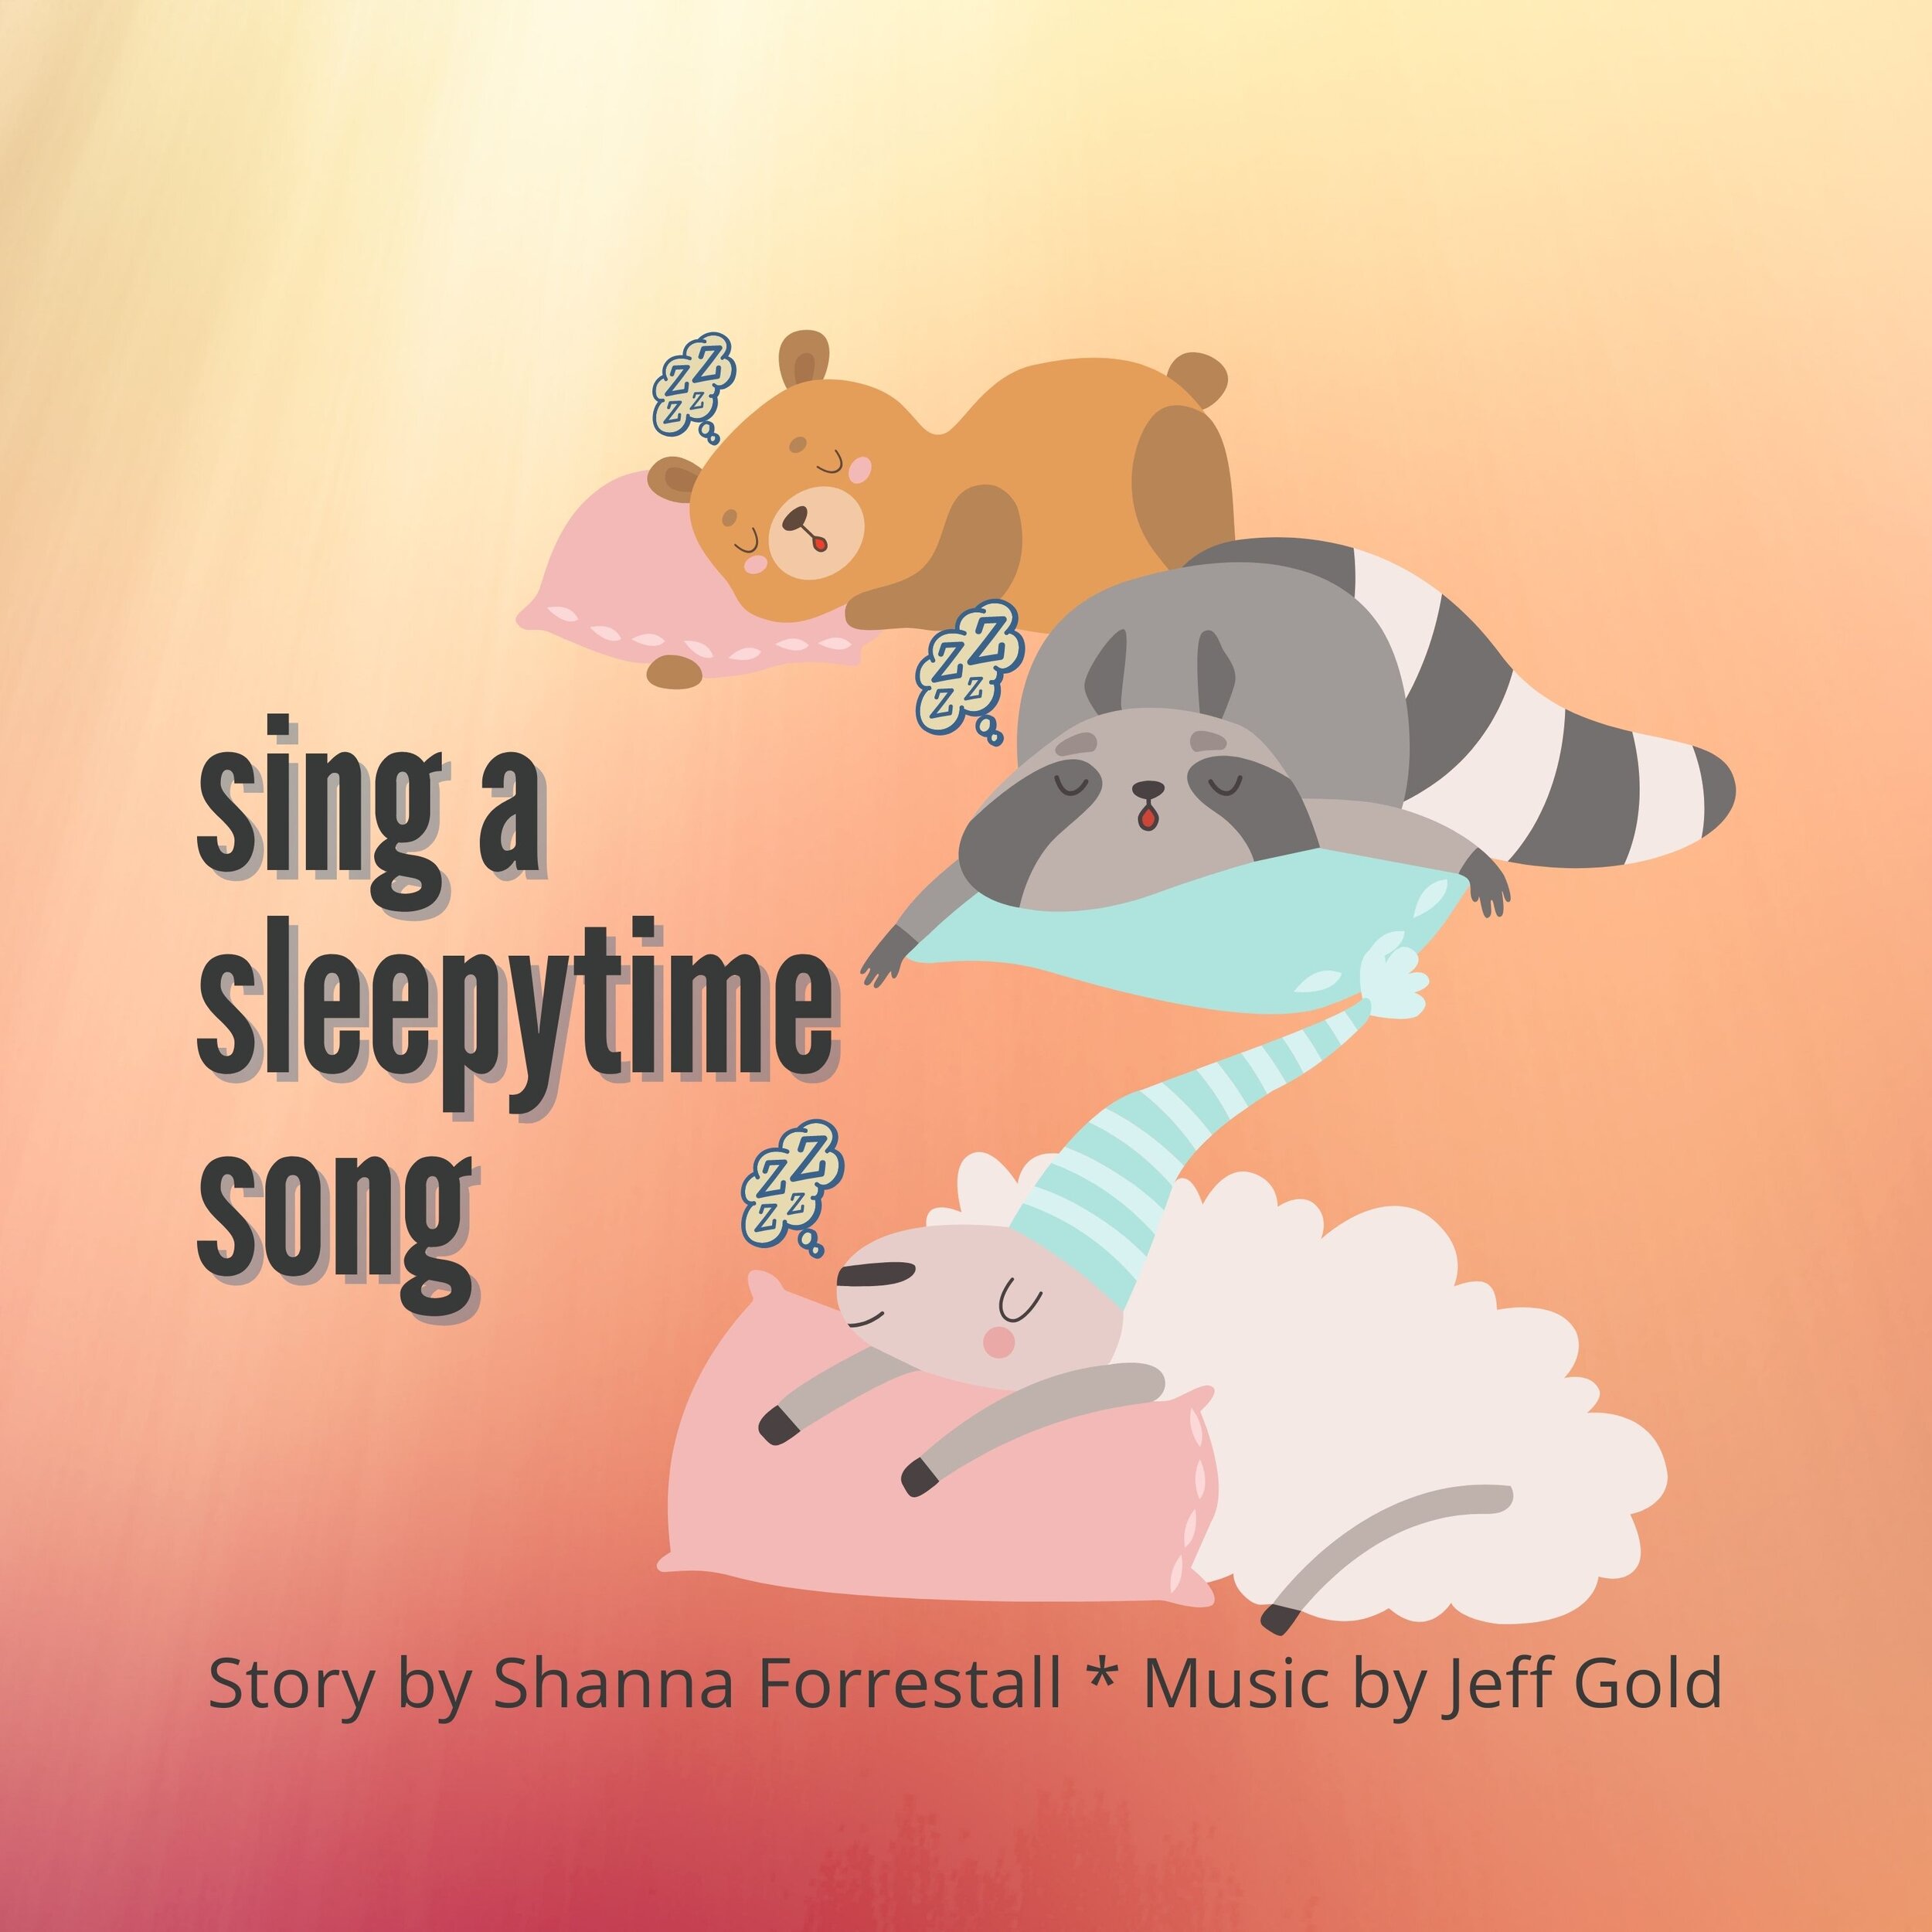 sing a sleepytime song- Cover V1.0 - 3k.jpg